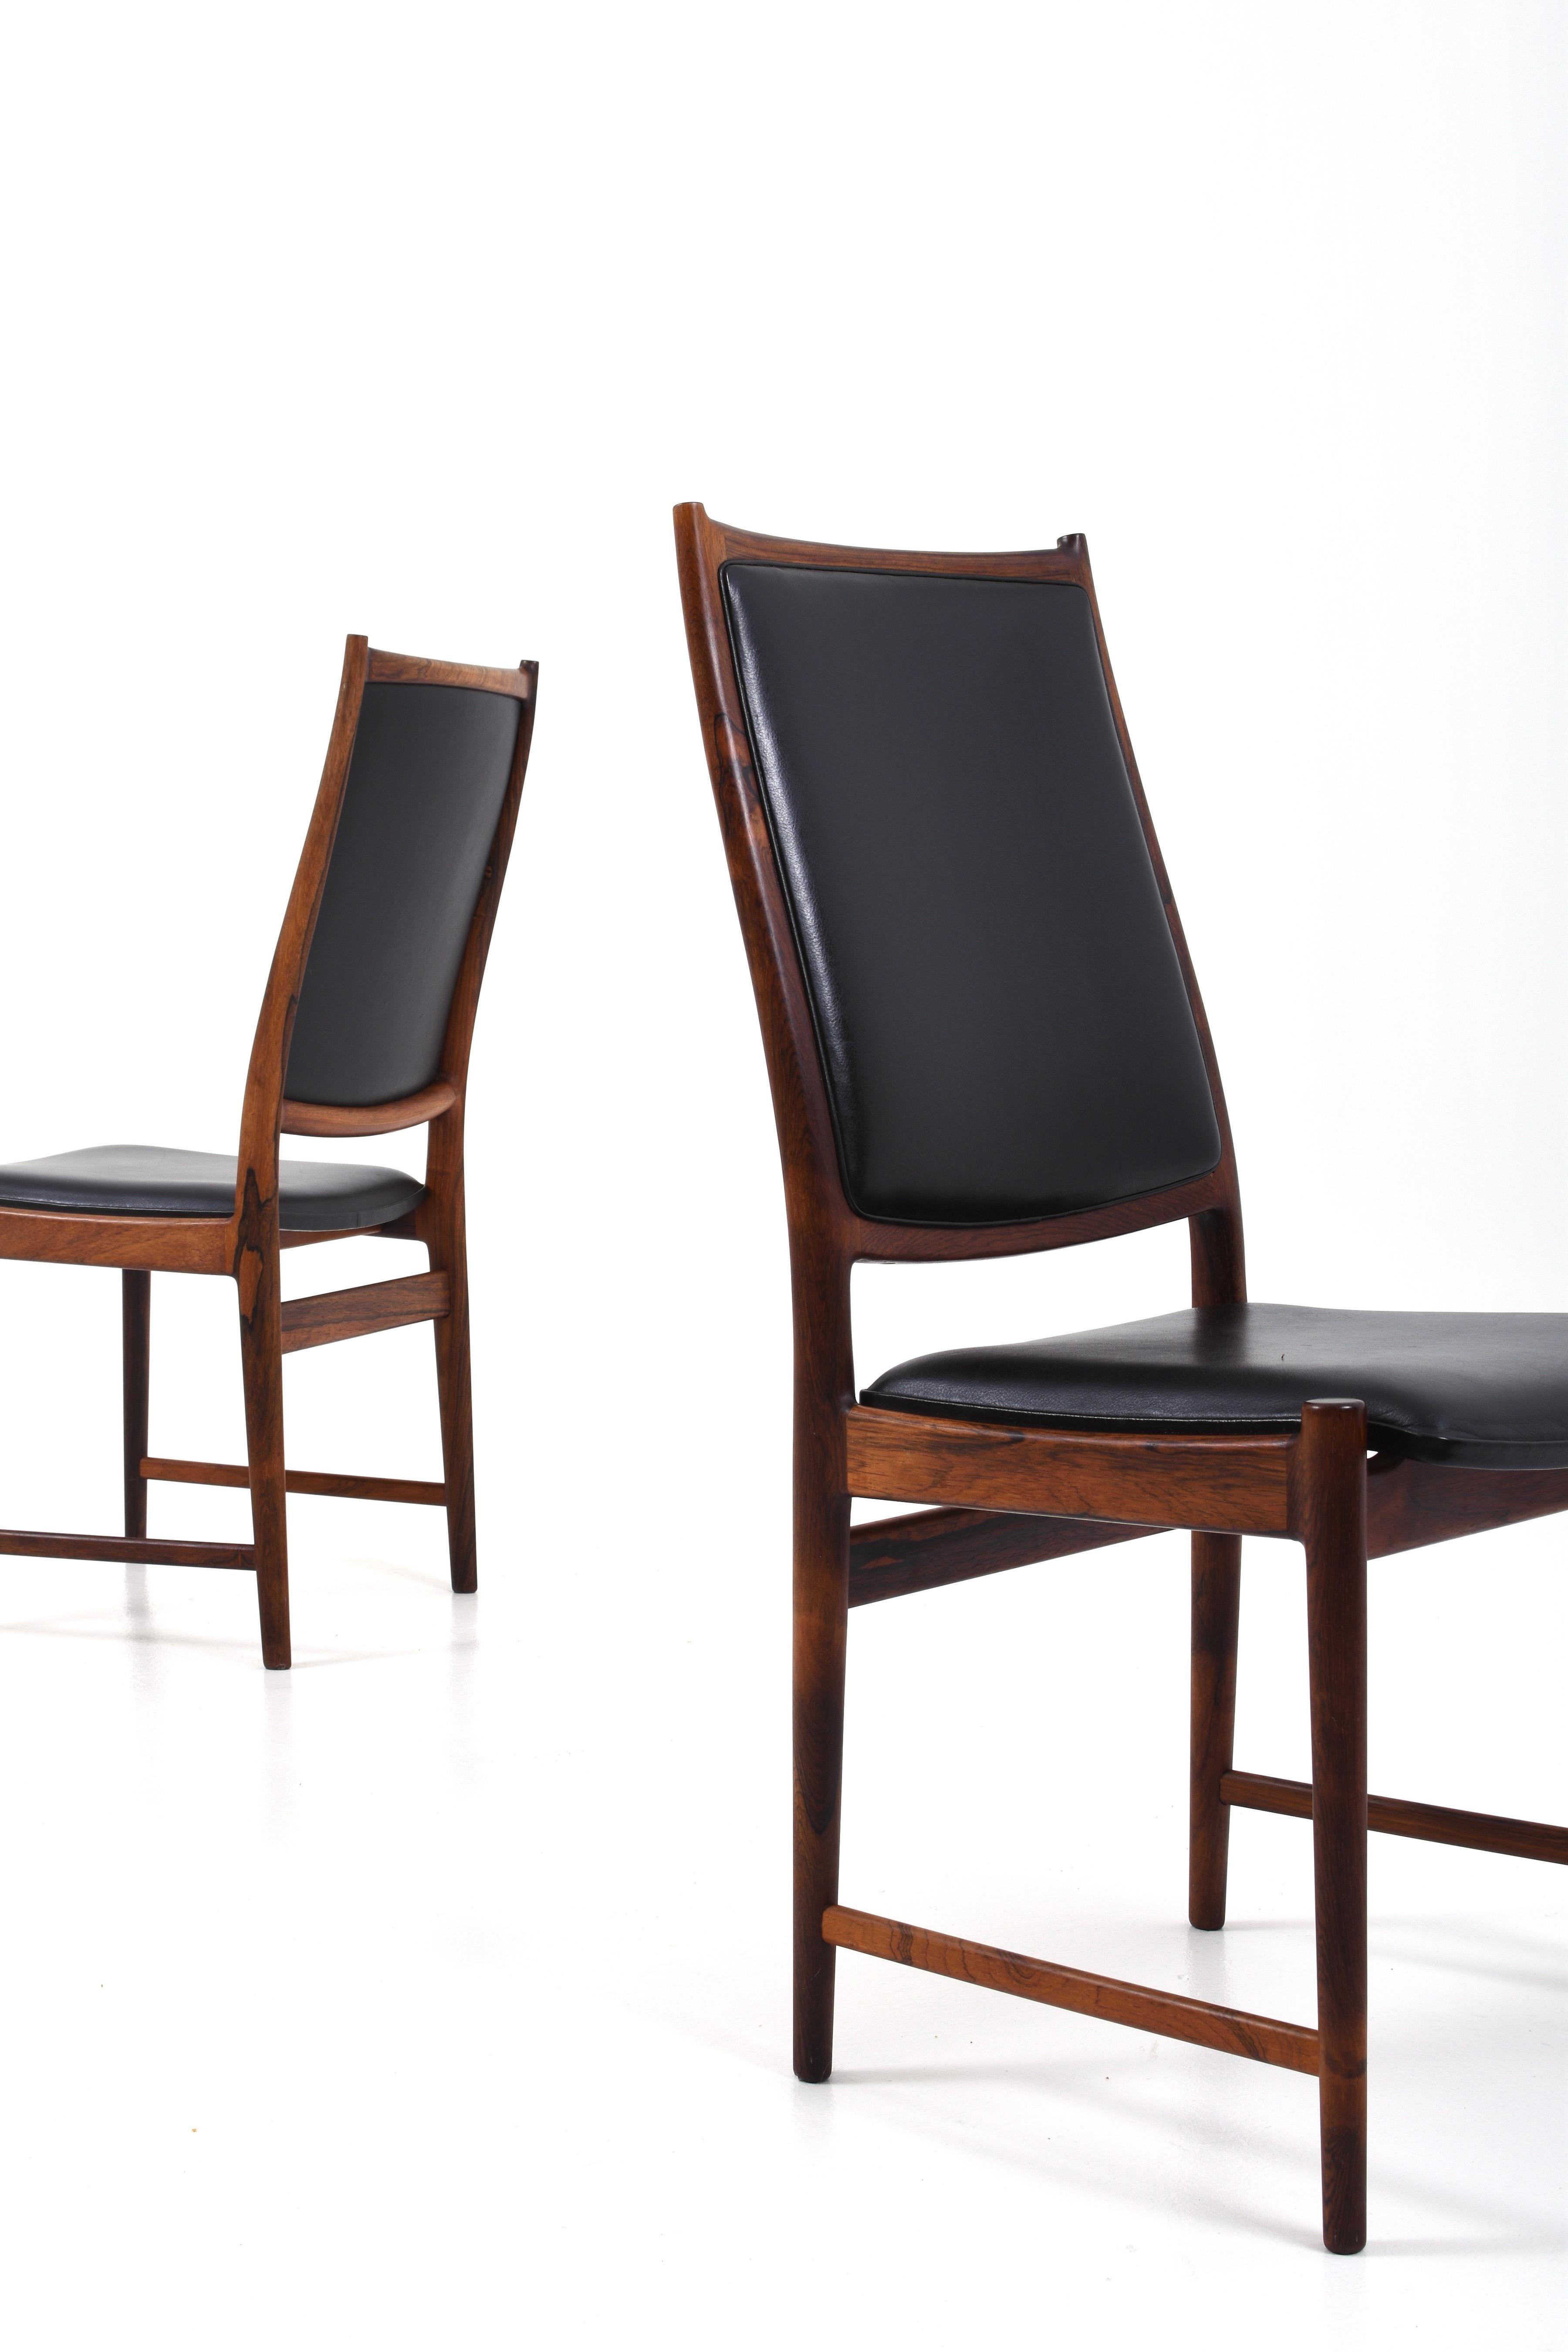 Sechs absolut fantastische Esszimmerstühle des Norwegers Torbjørn Afdal für die Nesjestranda møbelfabrikk.

Die Stühle sind aus Palisanderholz gefertigt und mit schwarzem Leder bezogen. Sehr guter Zustand!